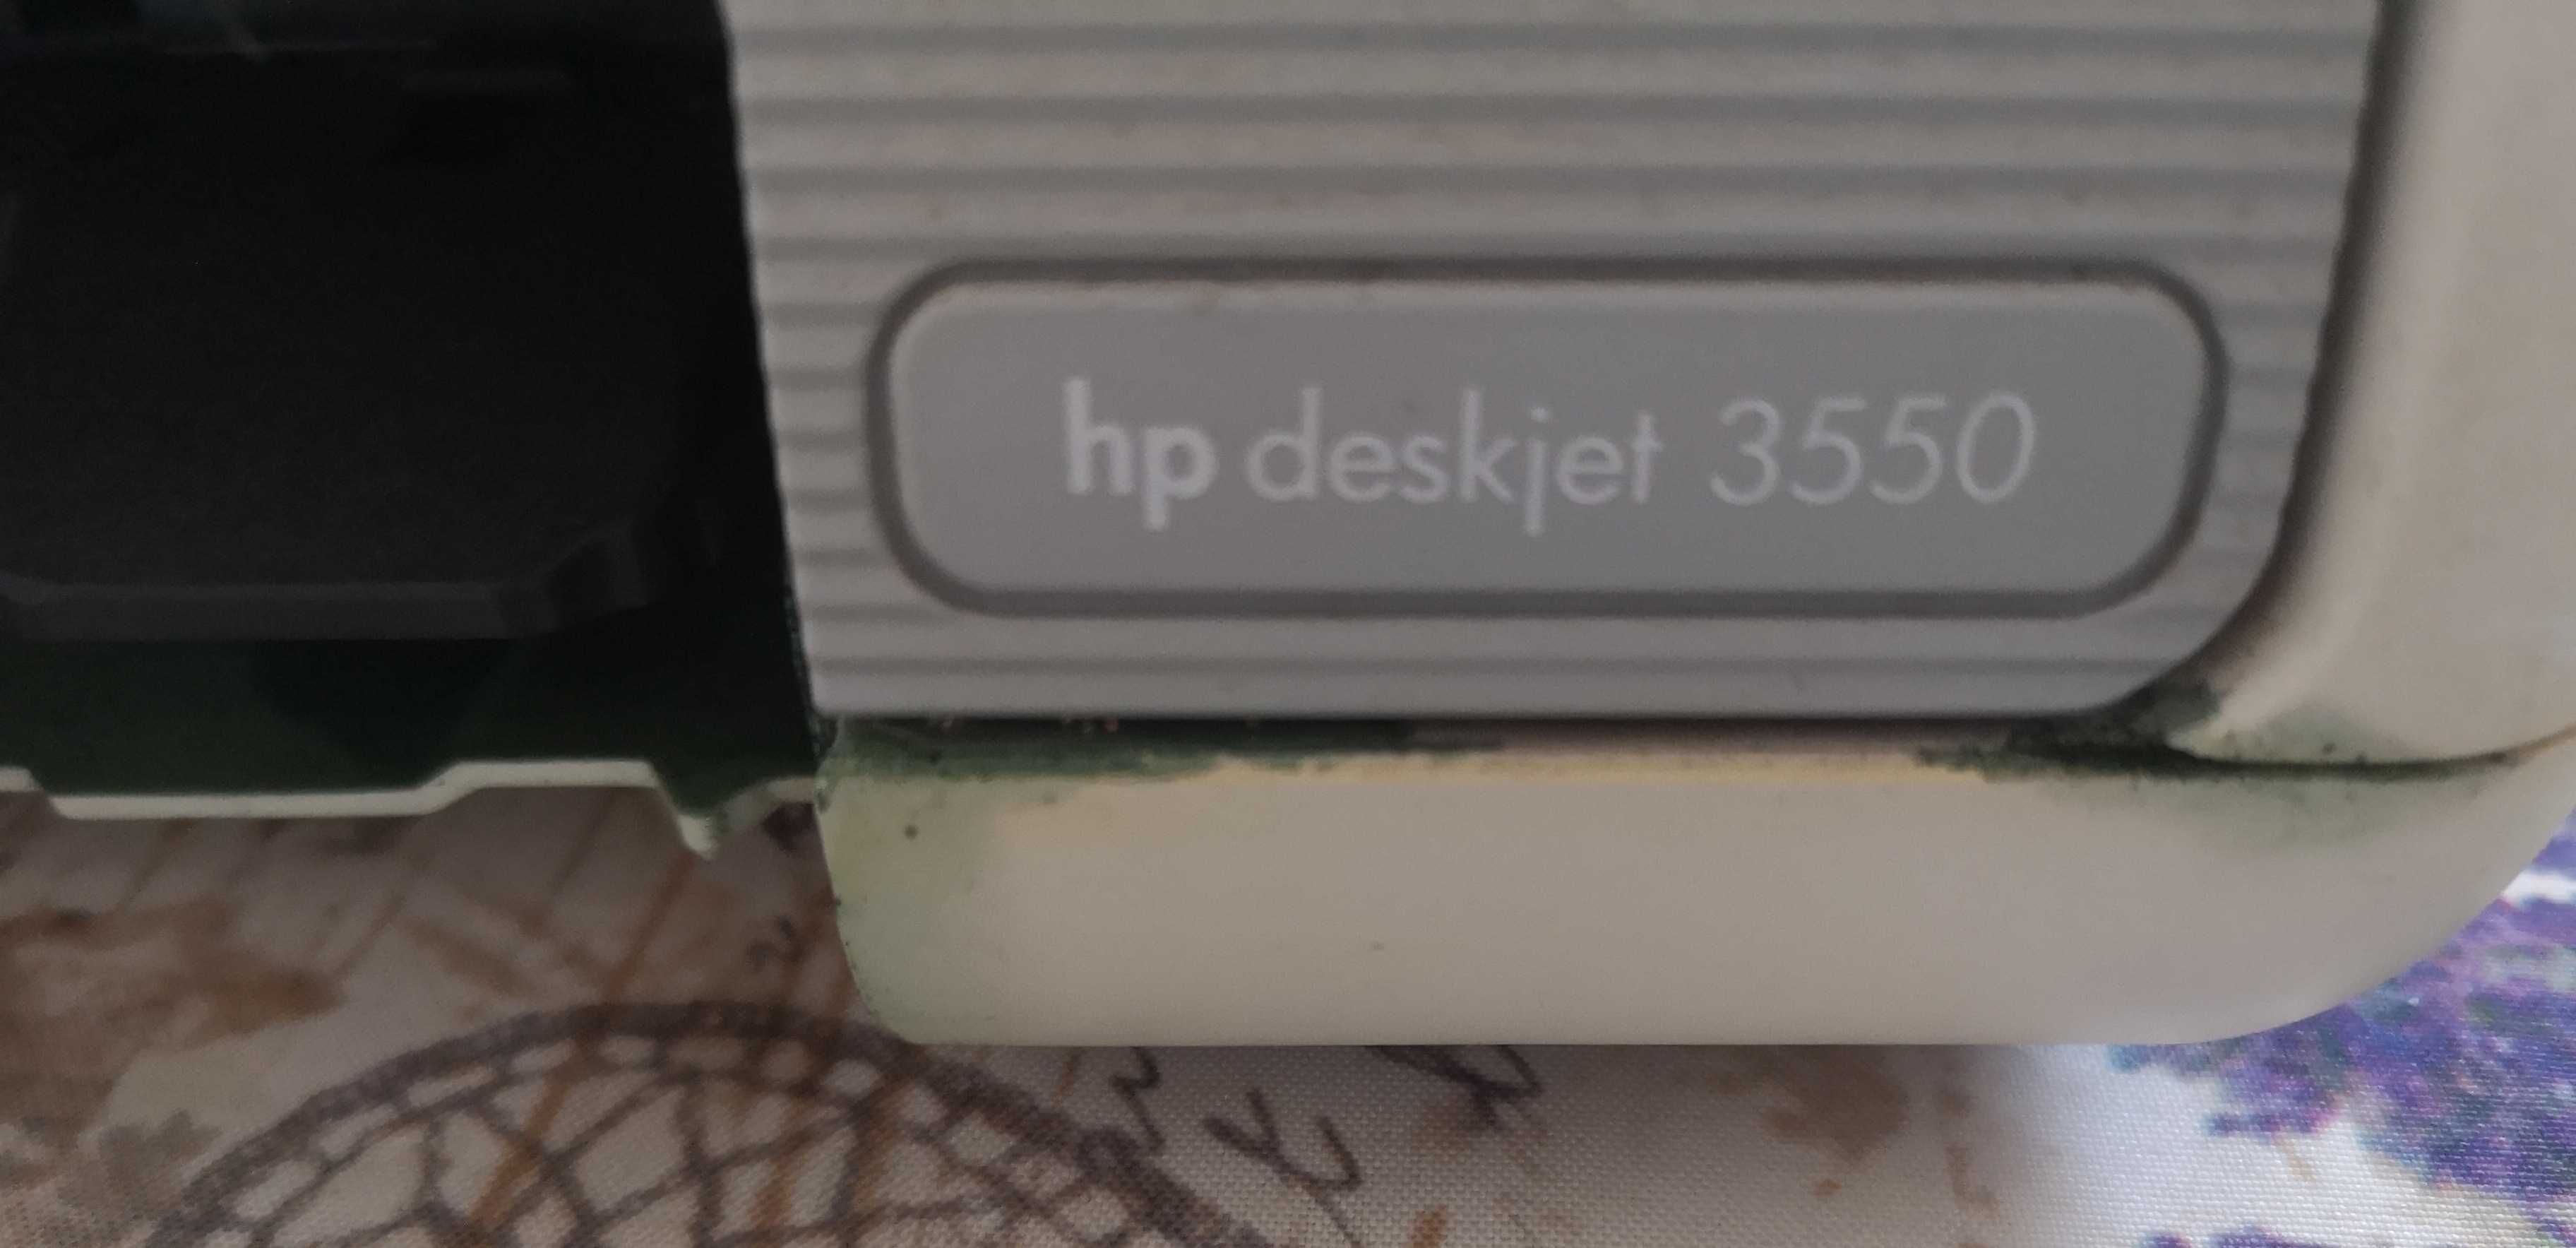 Impressora HP deskjet 3550